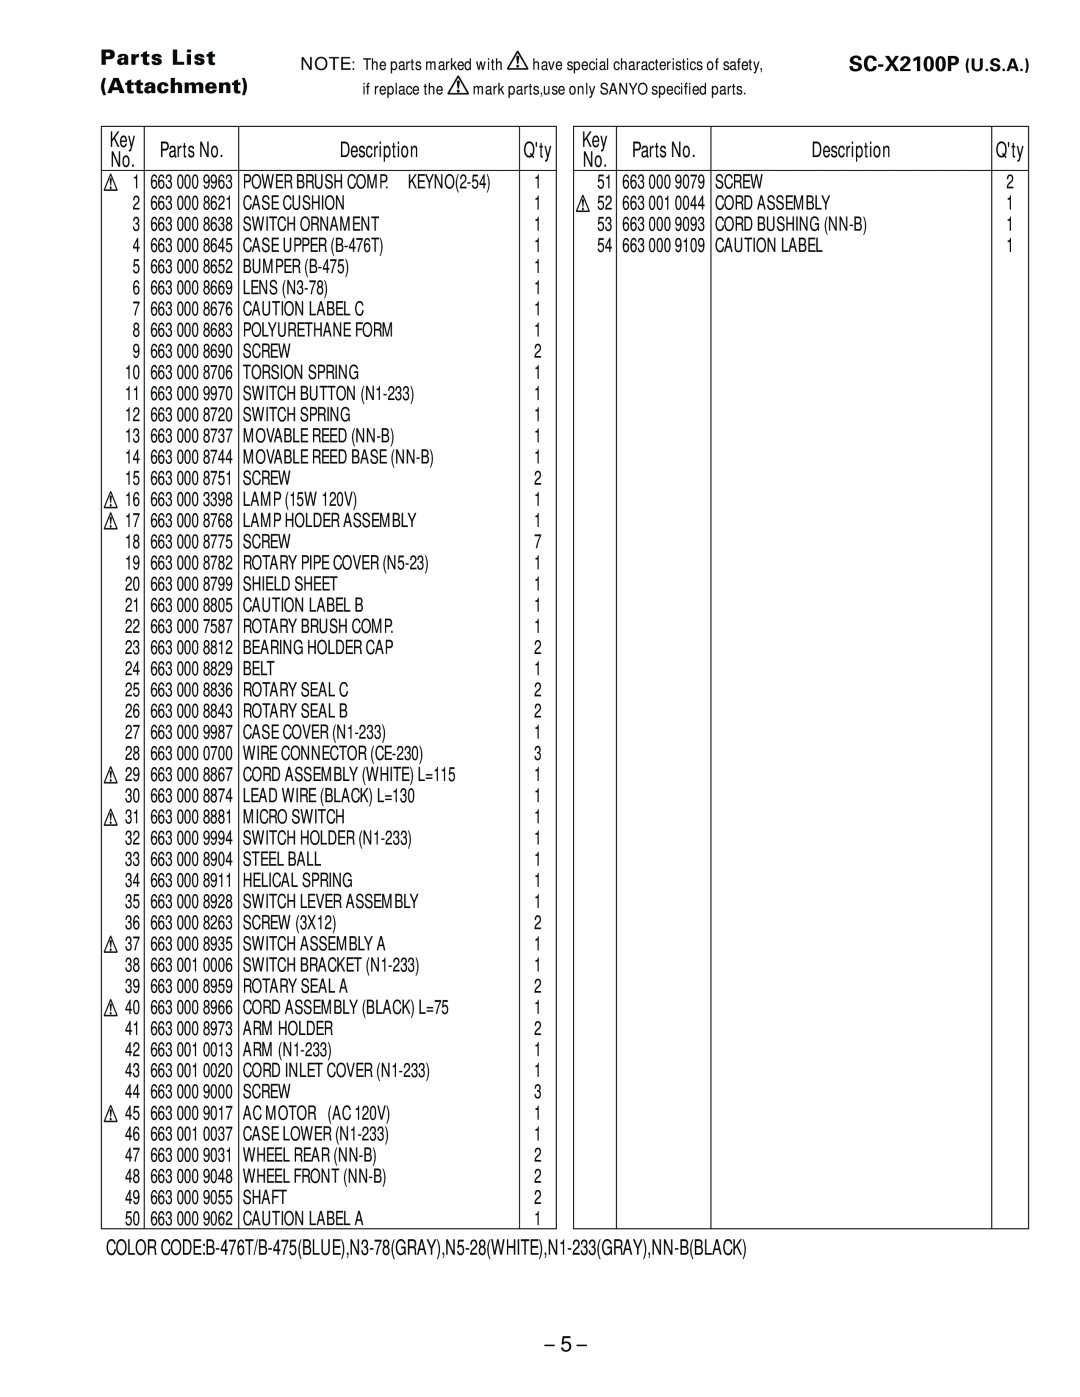 Sanyo specifications Parts List Attachment, Description, SC-X2100P U.S.A 